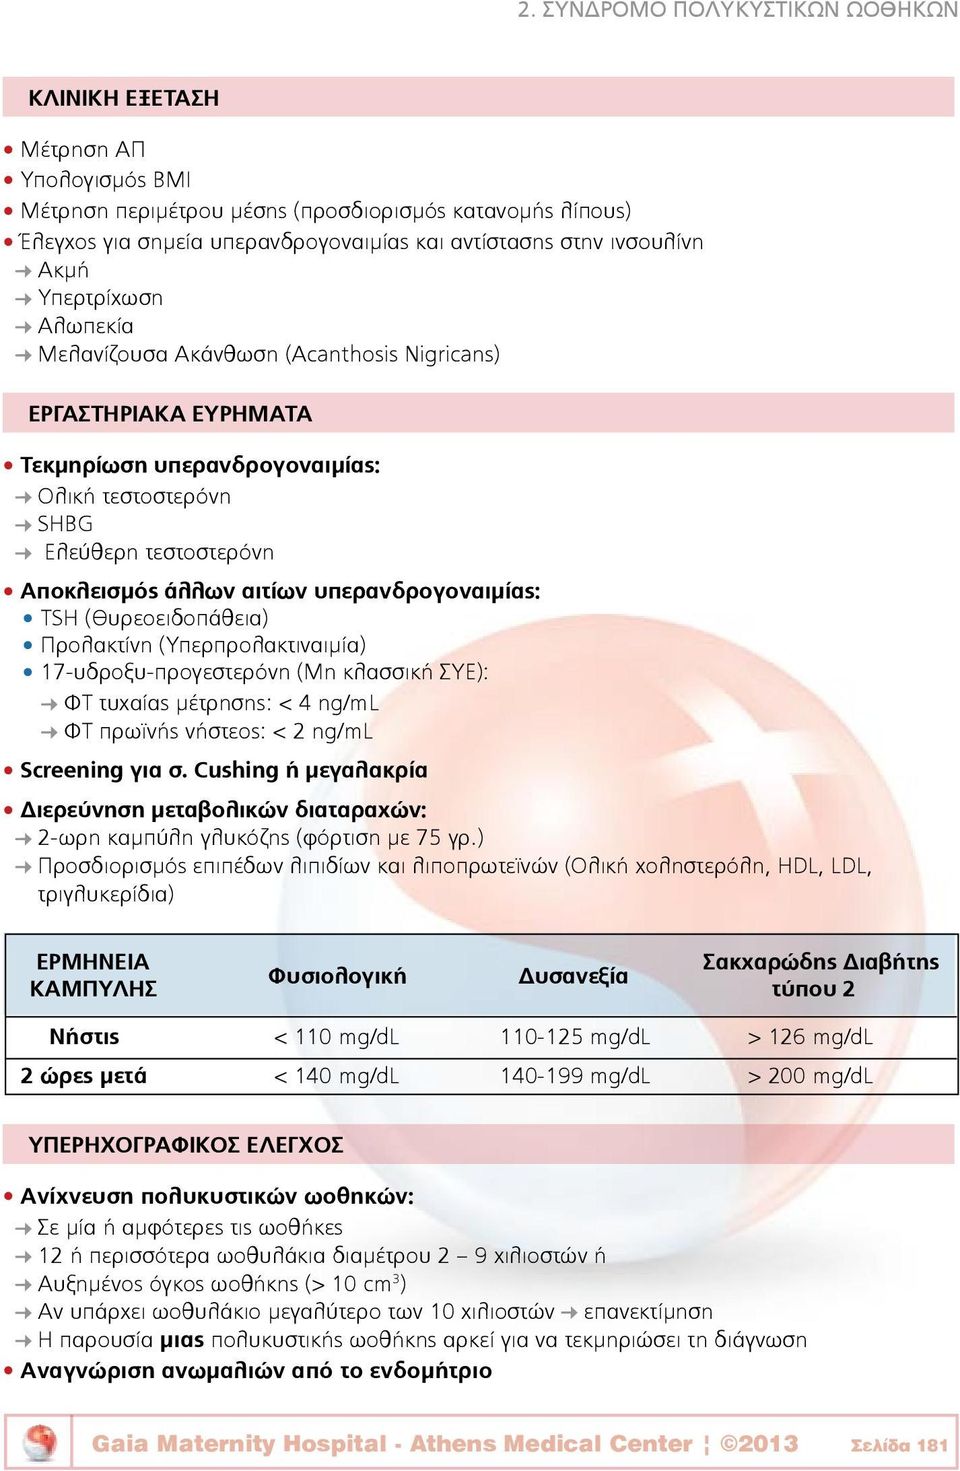 αιτίων υπερανδρογοναιμίας: TSH (Θυρεοειδοπάθεια) Προλακτίνη (Υπερπρολακτιναιμία) 17-υδροξυ-προγεστερόνη (Μη κλασσική ΣΥΕ): ΦΤ τυχαίας μέτρησης: < 4 ng/ml ΦΤ πρωϊνής νήστεος: < 2 ng/ml Screening για σ.